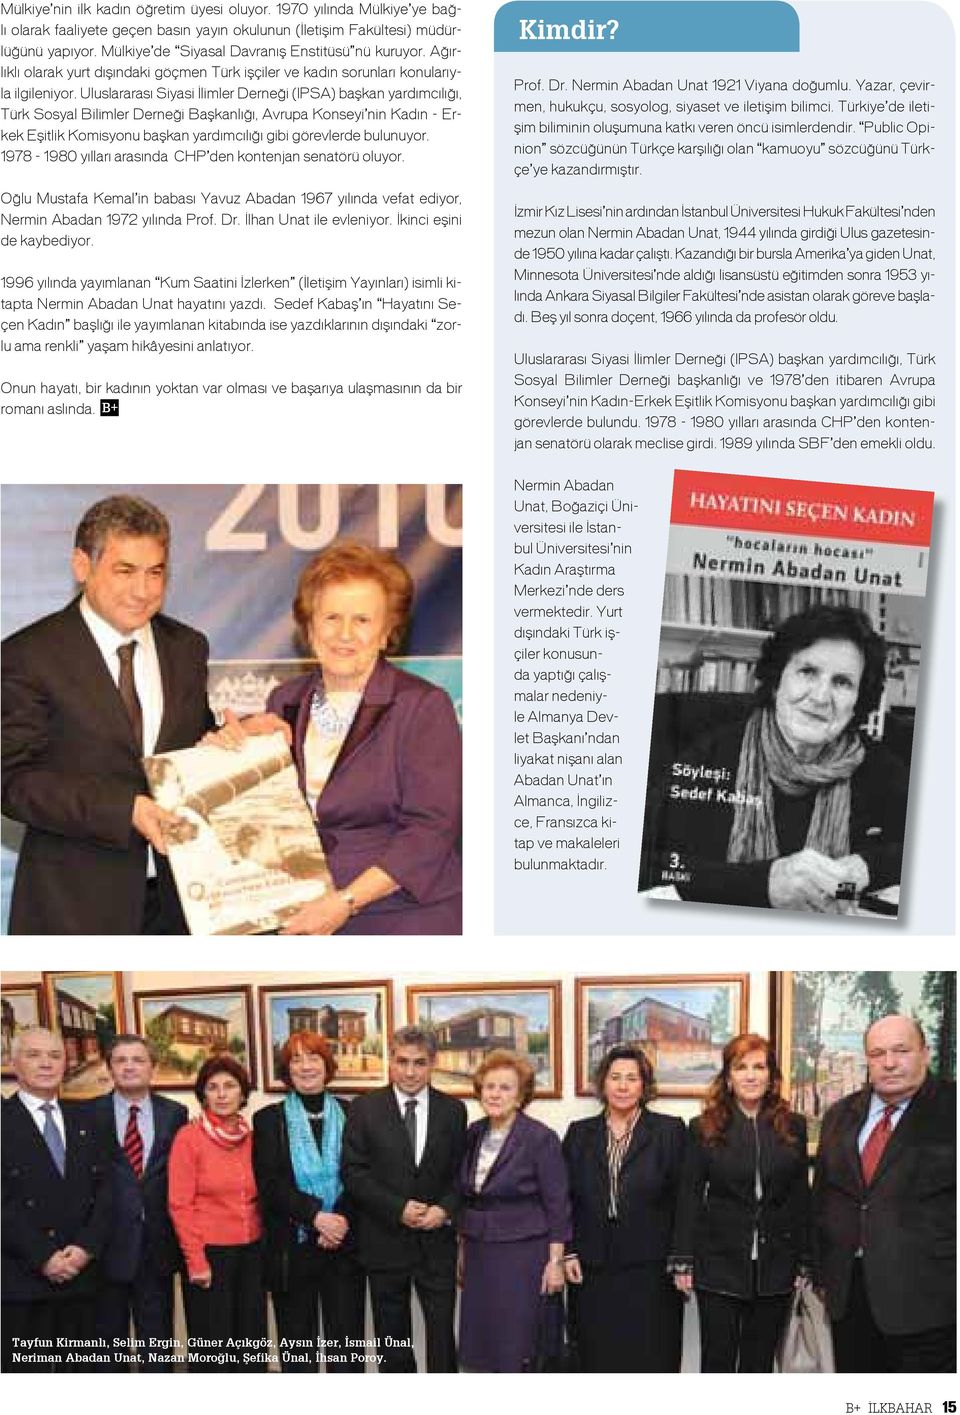 Uluslararası Siyasi İlimler Derneği (IPSA) başkan yardımcılığı, Türk Sosyal Bilimler Derneği Başkanlığı, Avrupa Konseyi nin Kadın - Erkek Eşitlik Komisyonu başkan yardımcılığı gibi görevlerde